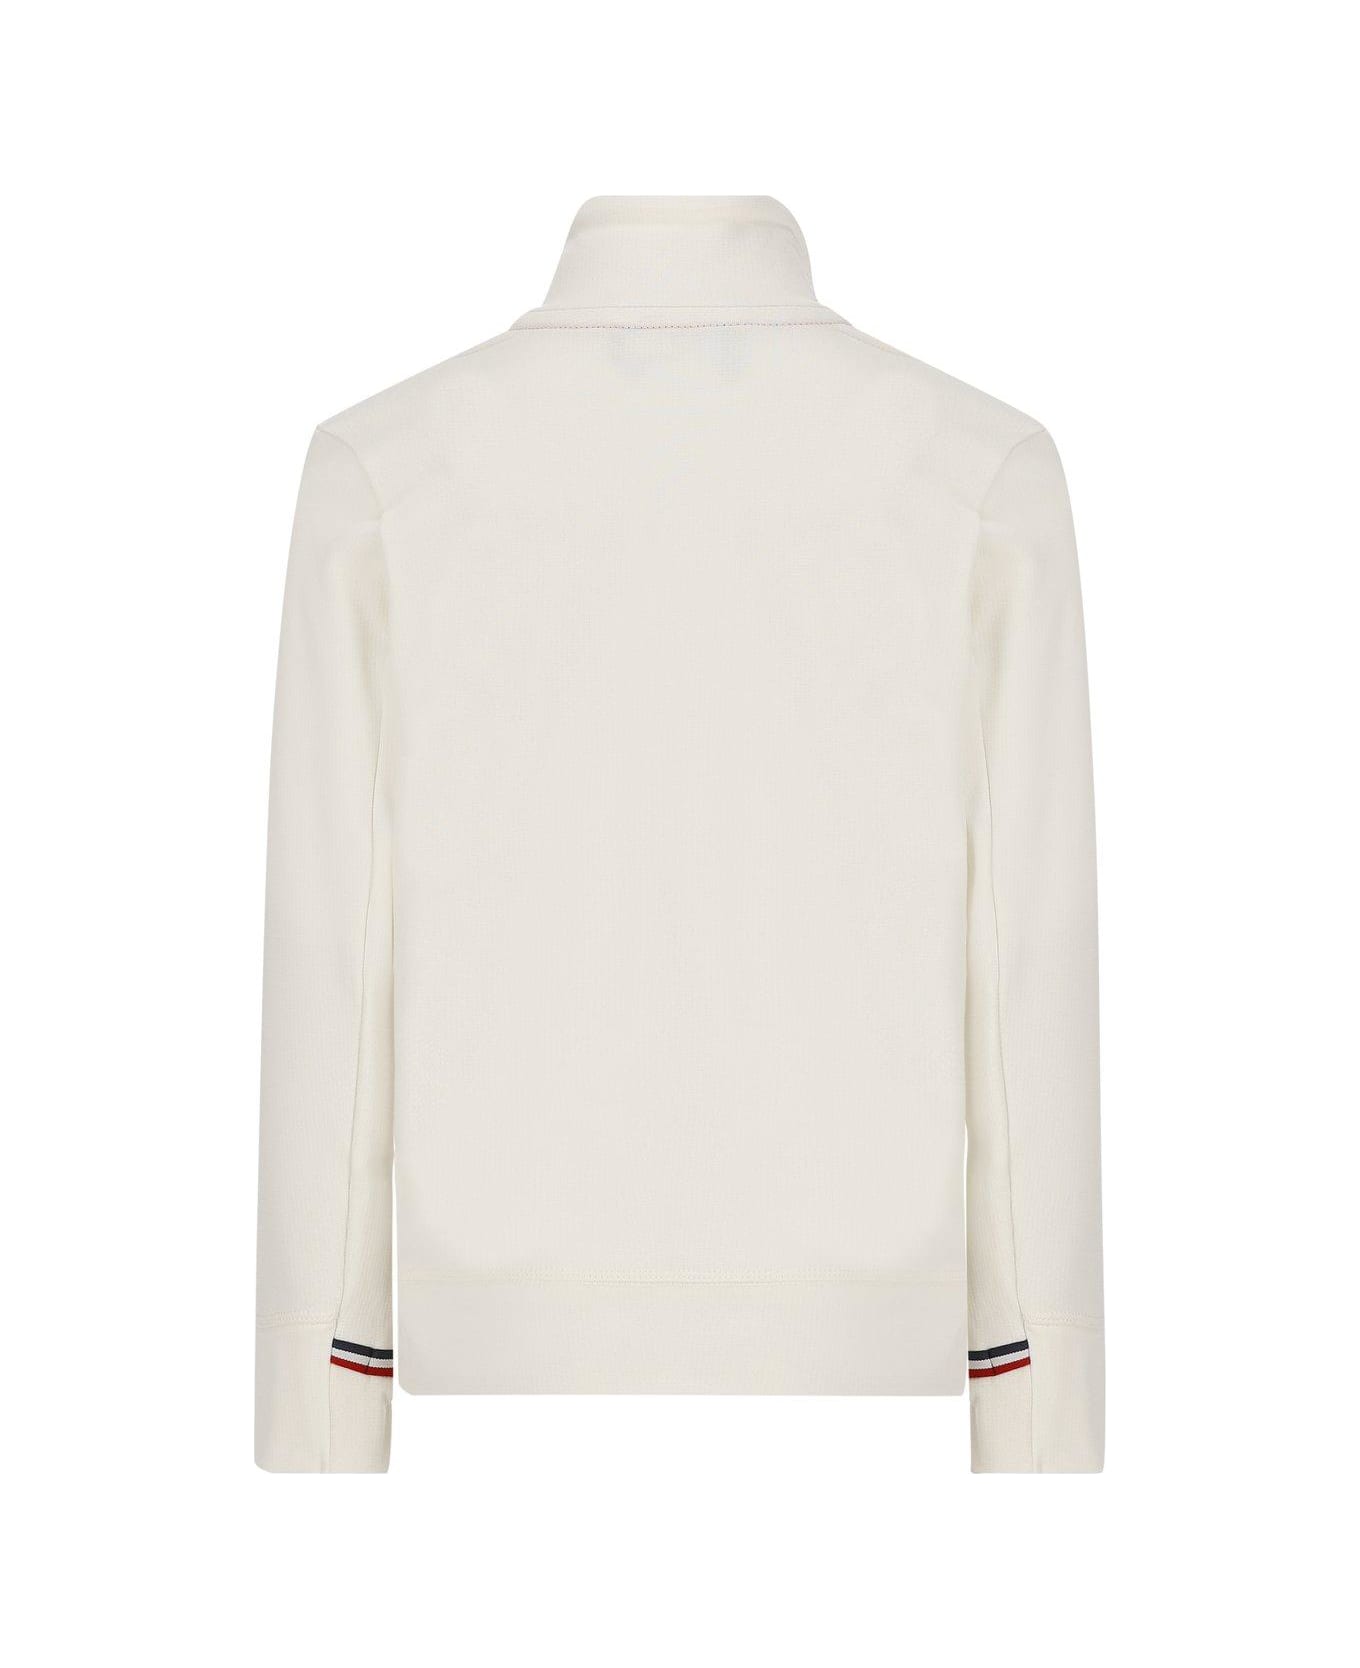 Moncler Grenoble Thermal High Neck Half-zipped Fleece Sweatshirt